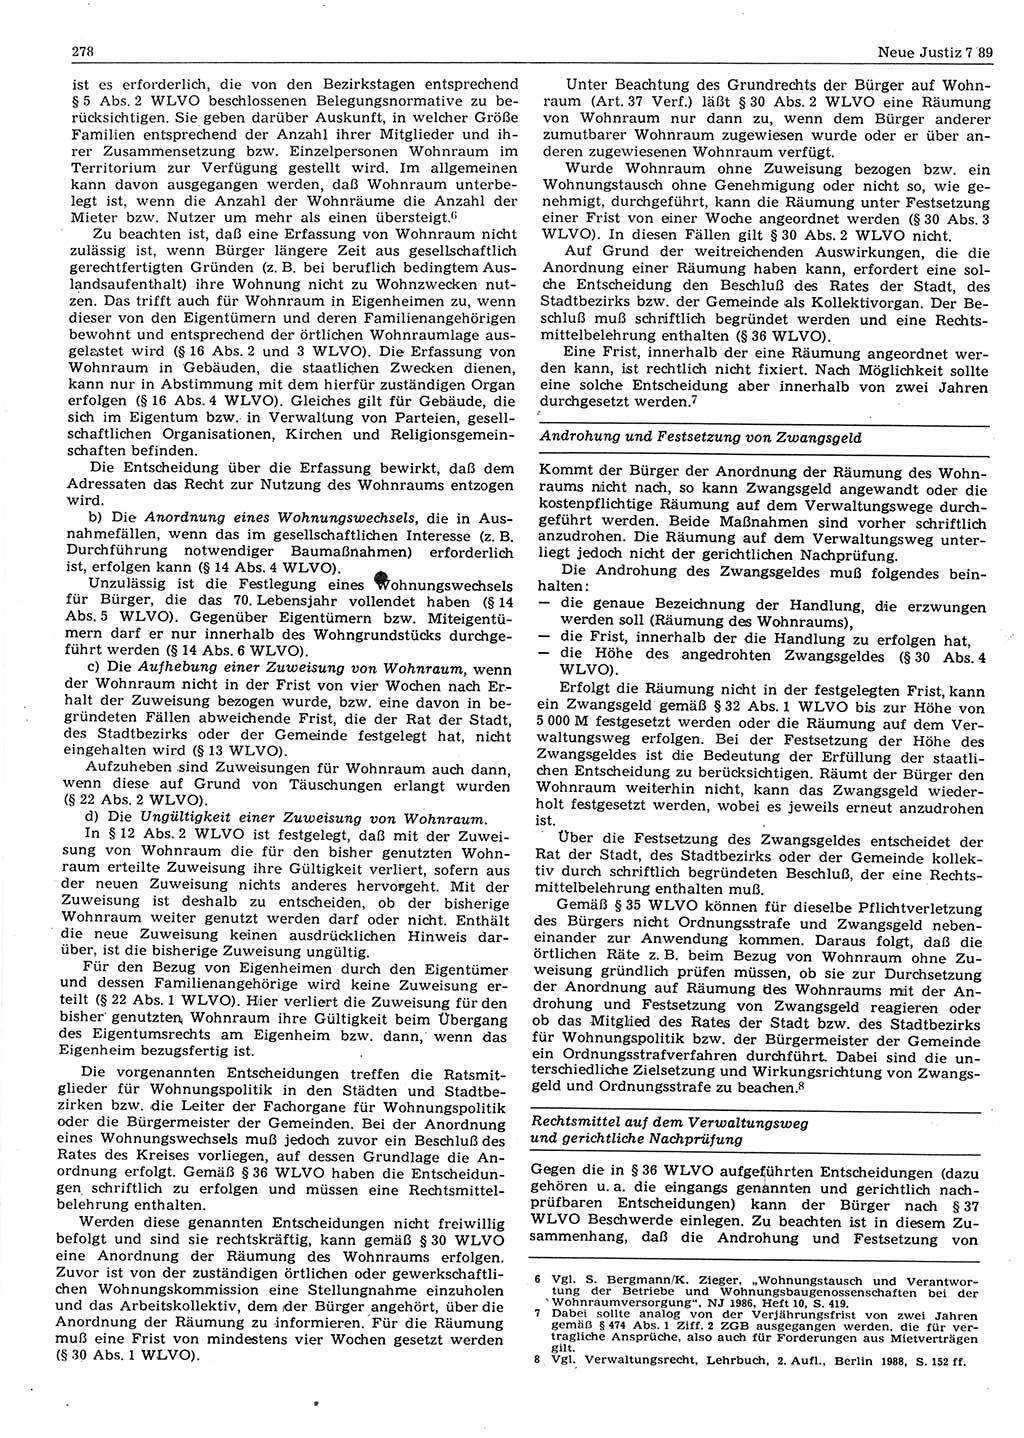 Neue Justiz (NJ), Zeitschrift für sozialistisches Recht und Gesetzlichkeit [Deutsche Demokratische Republik (DDR)], 43. Jahrgang 1989, Seite 278 (NJ DDR 1989, S. 278)